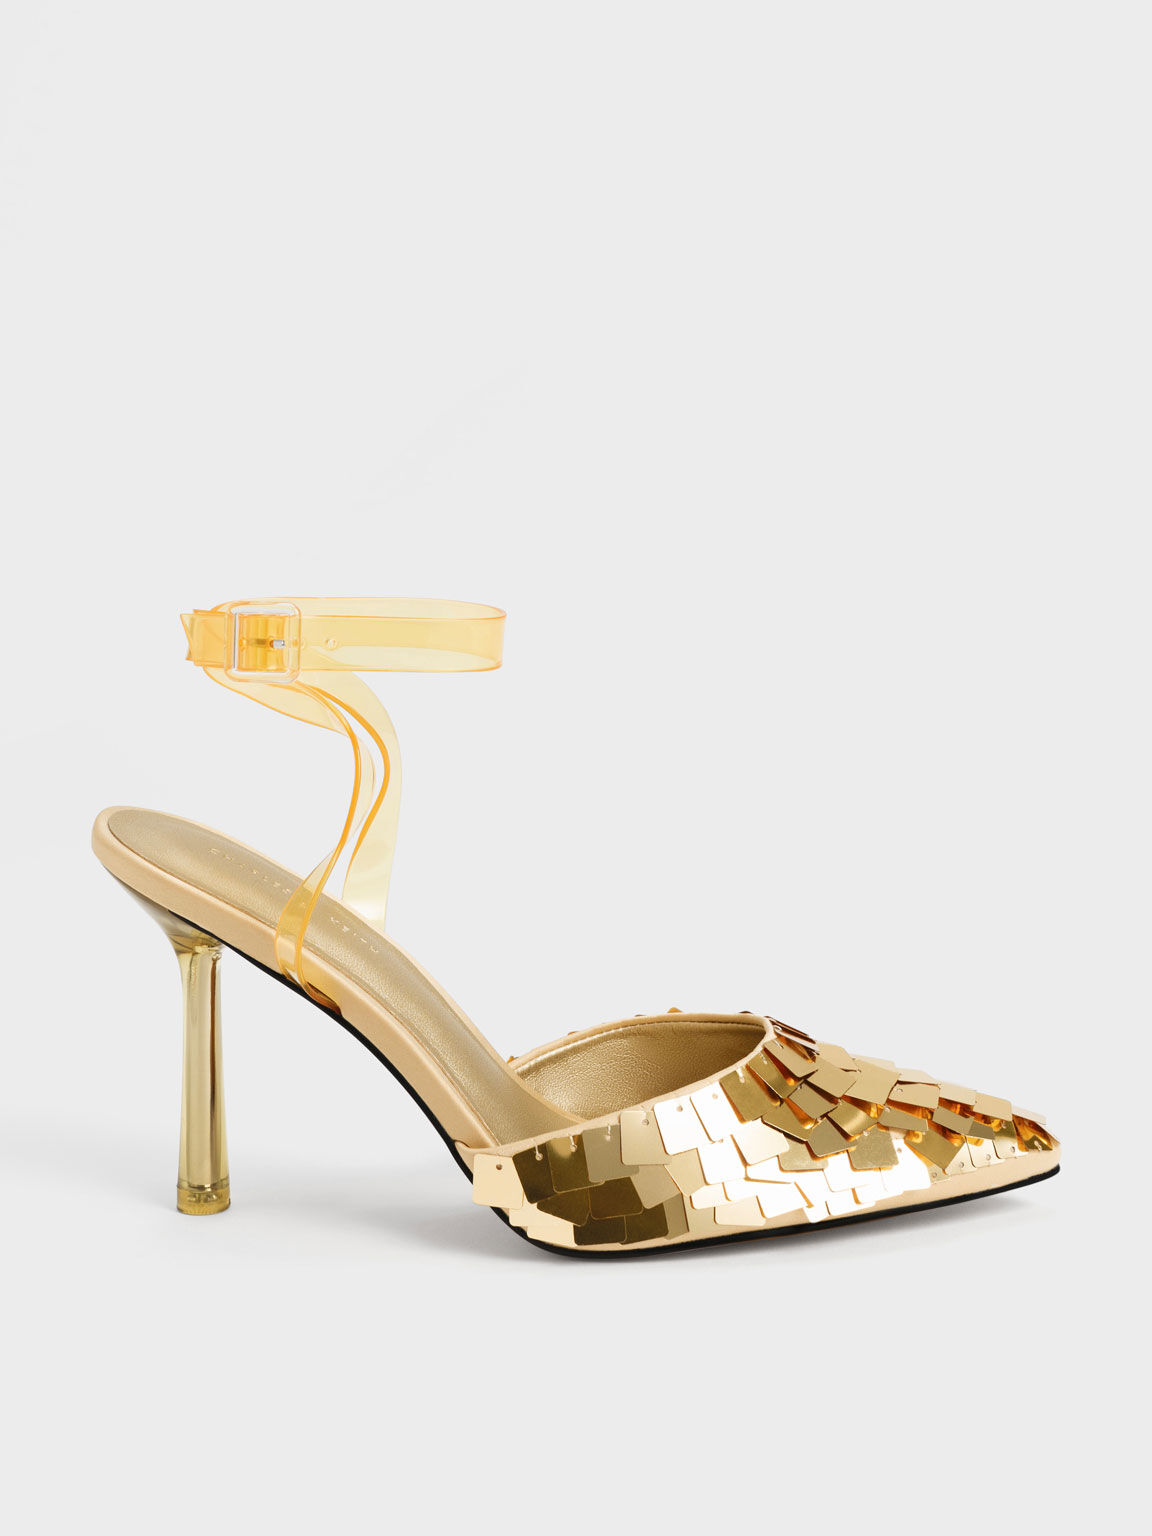 Sequinned Satin Ankle-Strap Pumps, Gold, hi-res